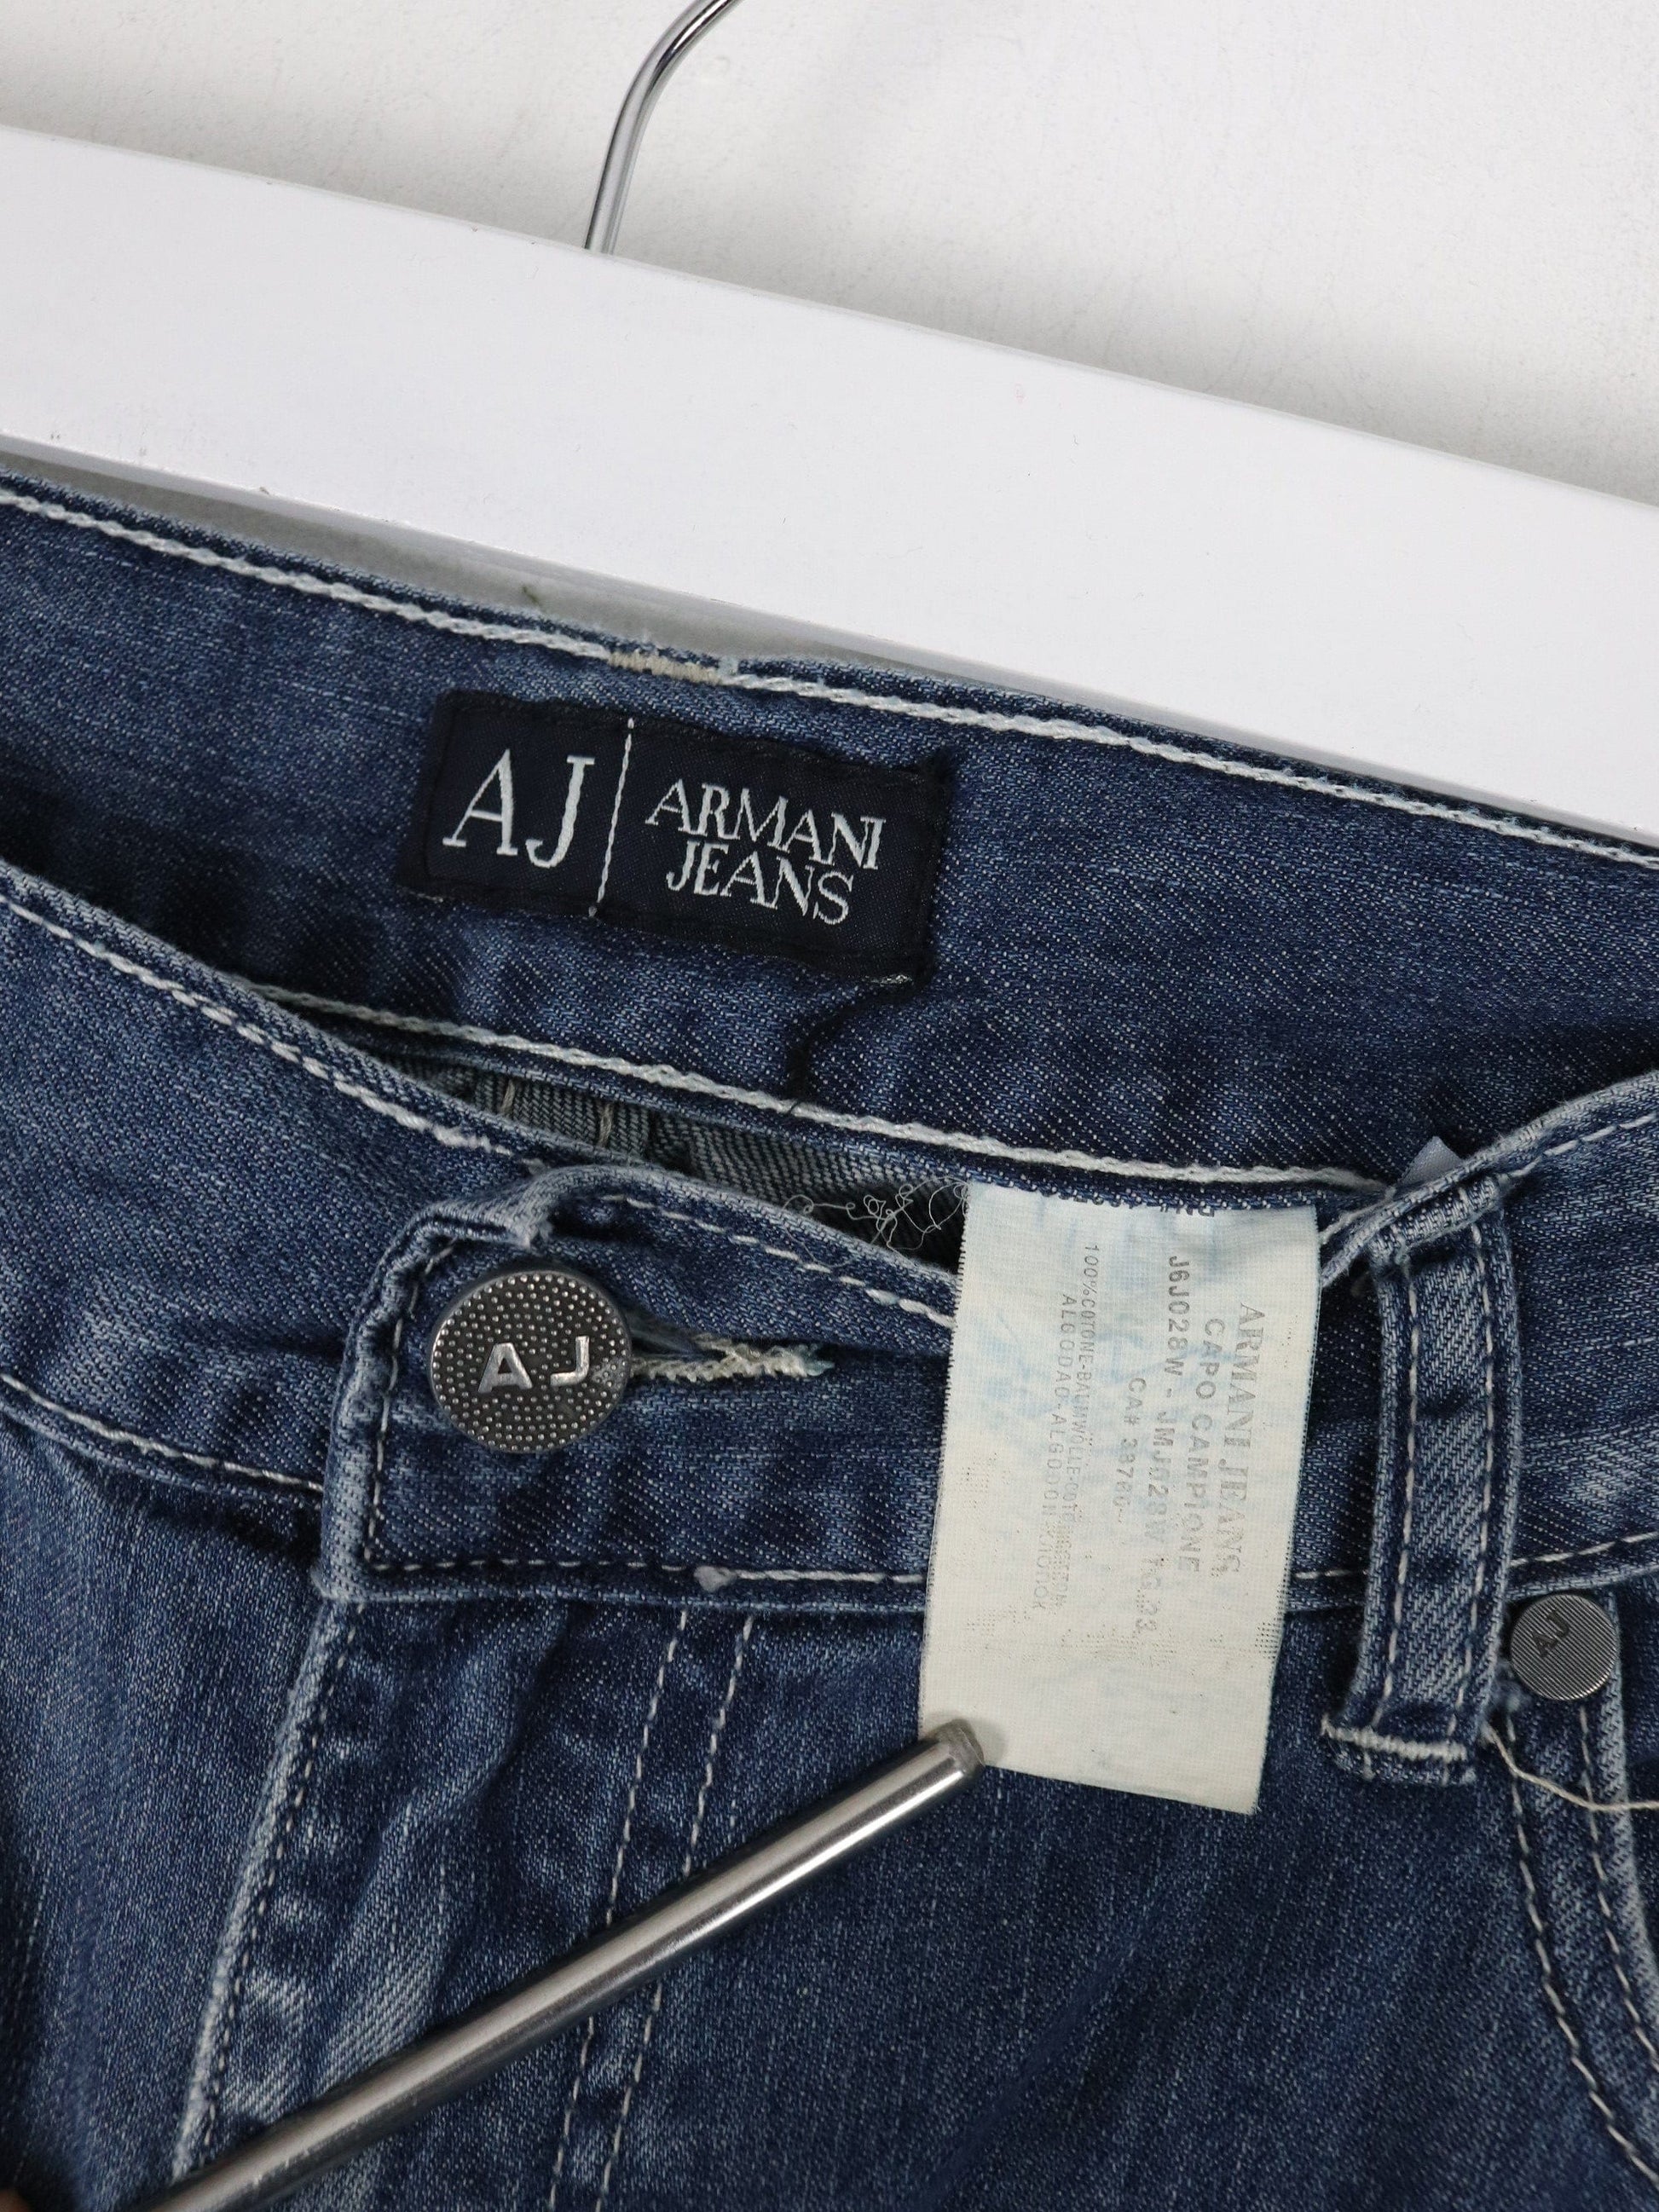 Other Jeans Armani Jeans Pants Fits Mens 33 x 30 Blue Denim